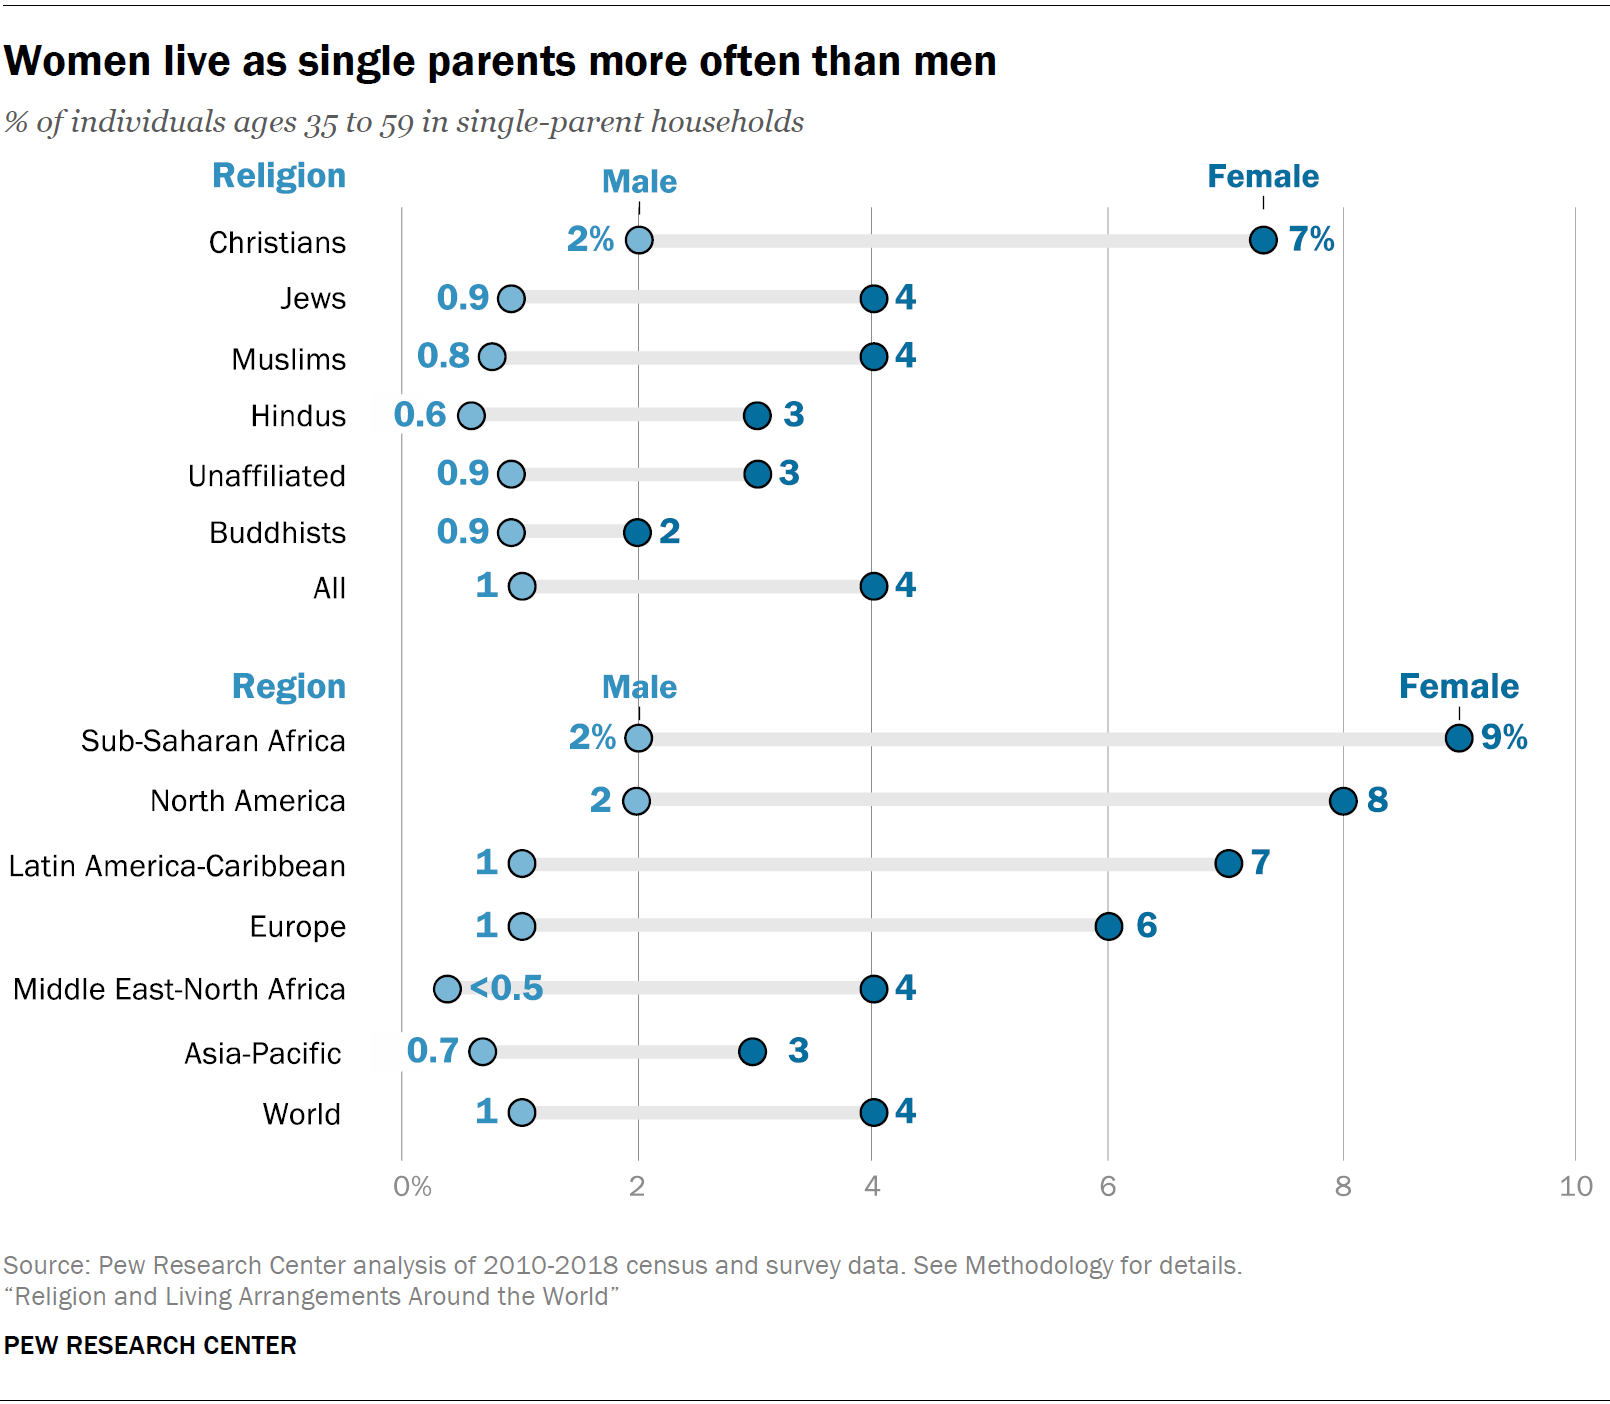 Women live as single parents more often than men